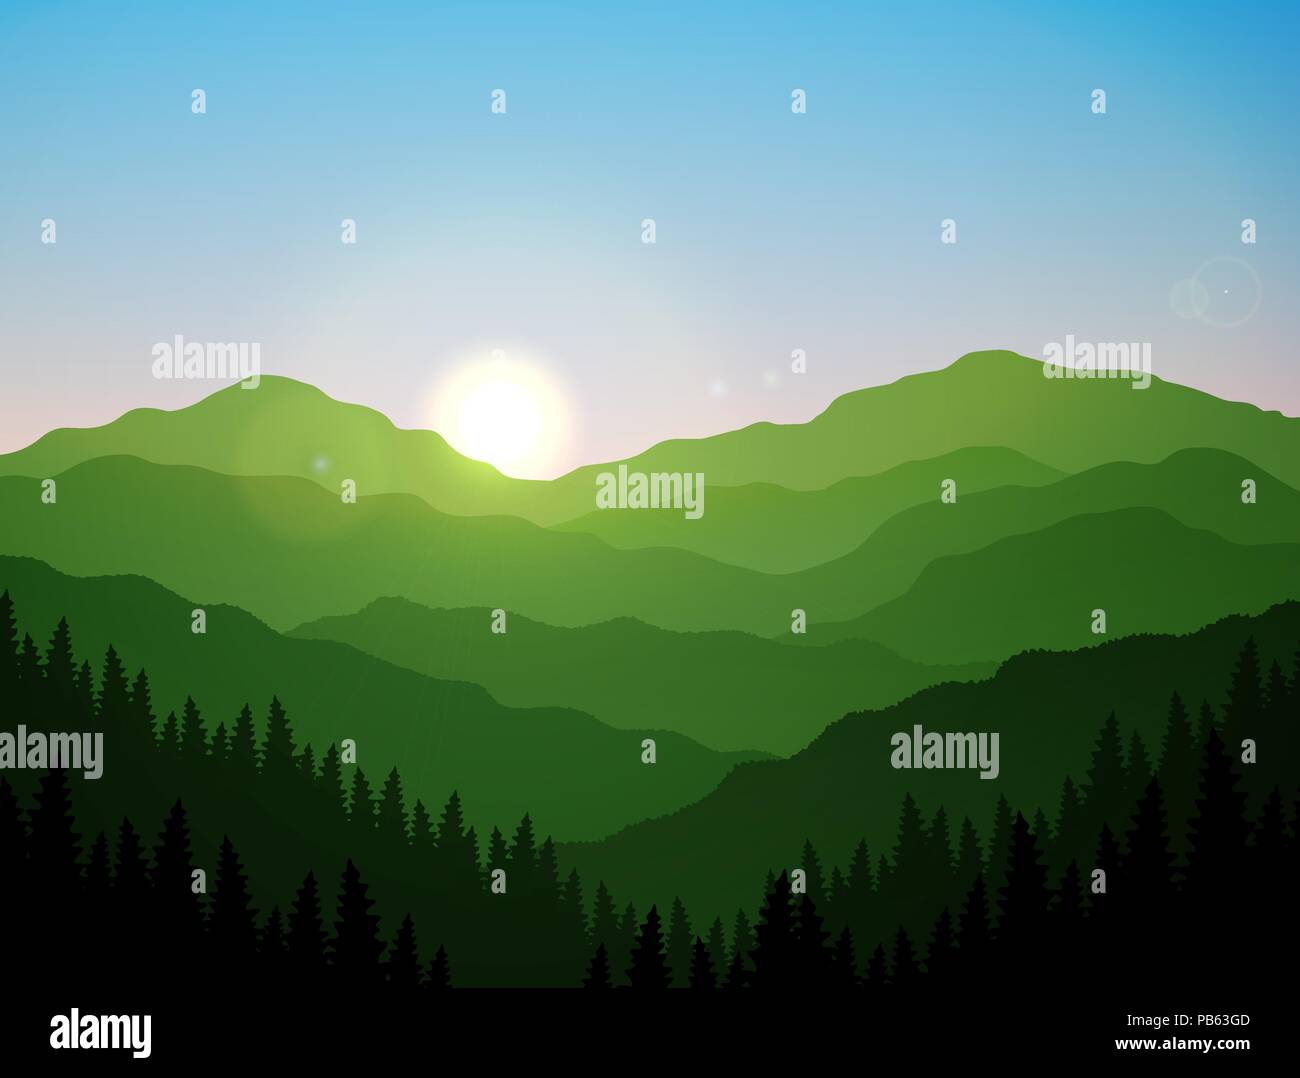 Eine Gruppe von grünen Bergen und Hügeln bei schönen Sonnenaufgang Stock Vektor